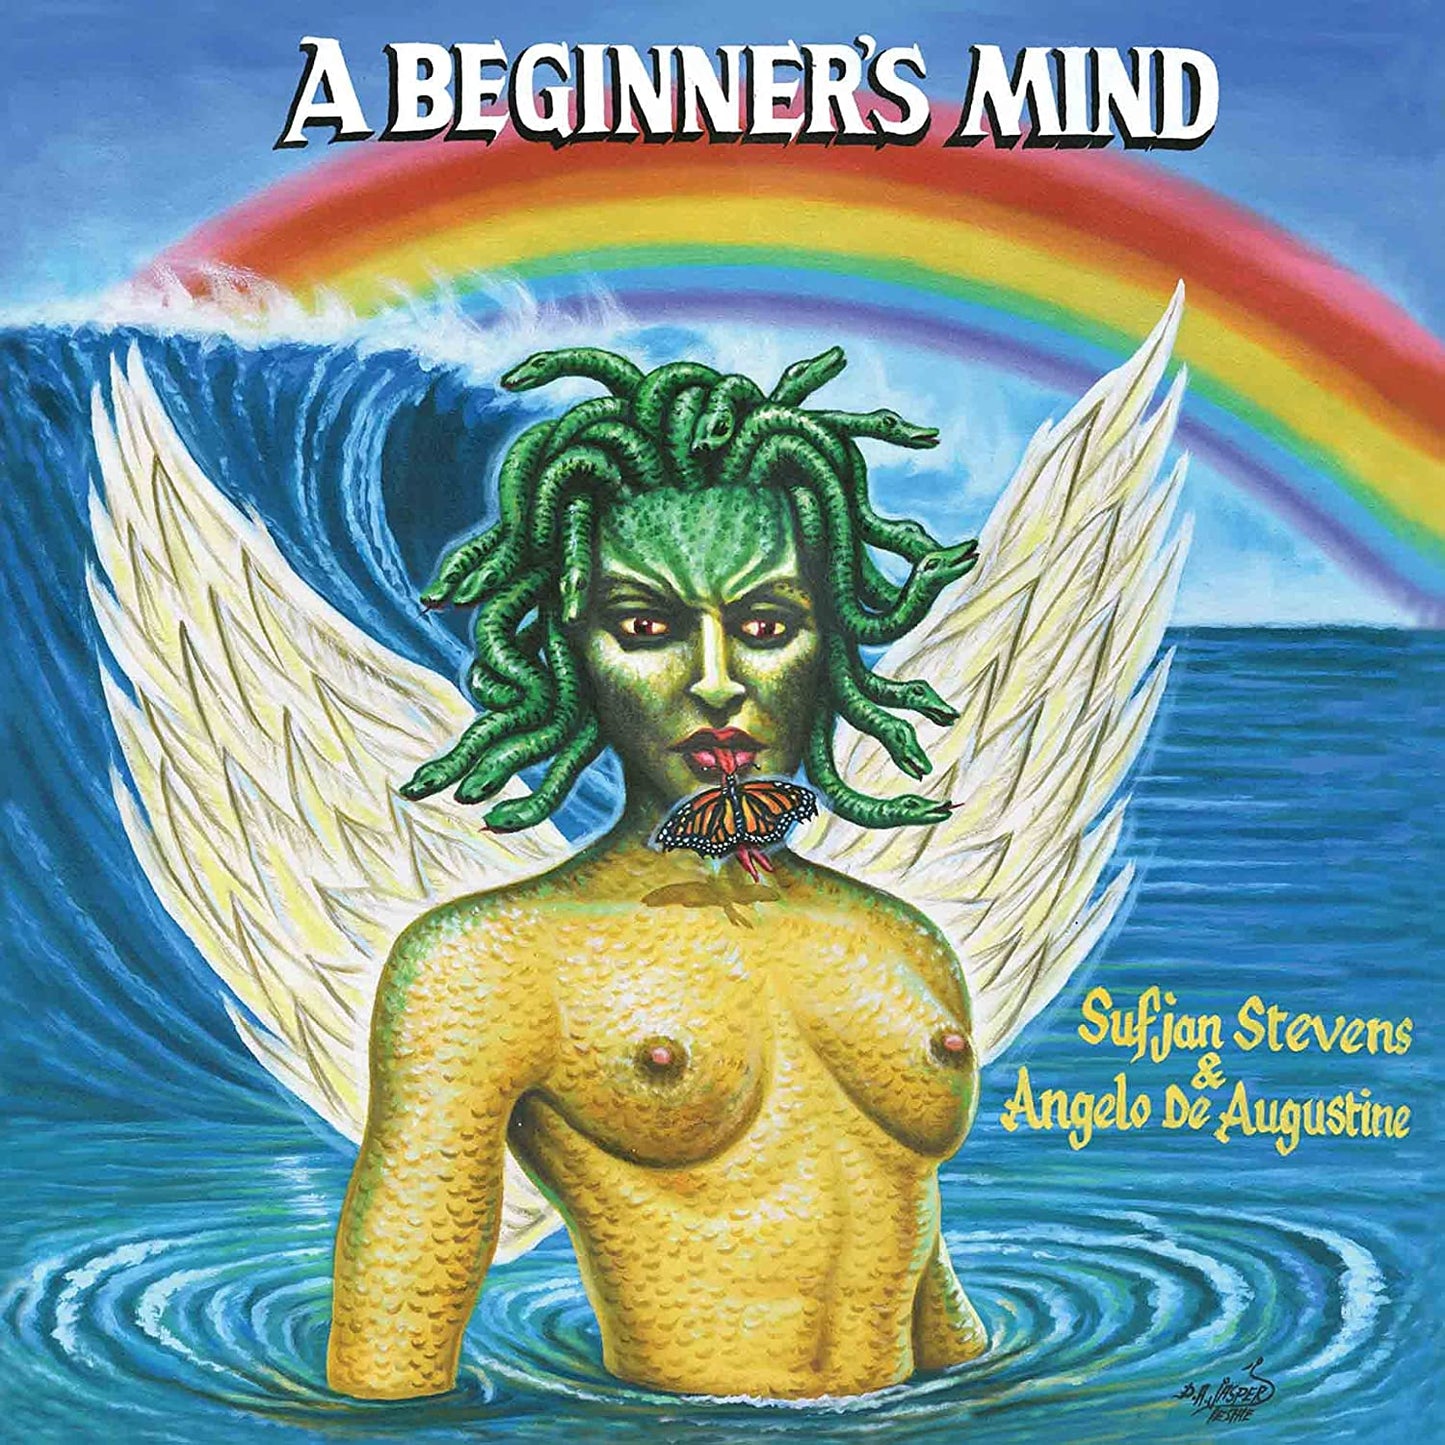 Sufjan Stevens & Angelo De Augustine - A Beginner's Mind - CD